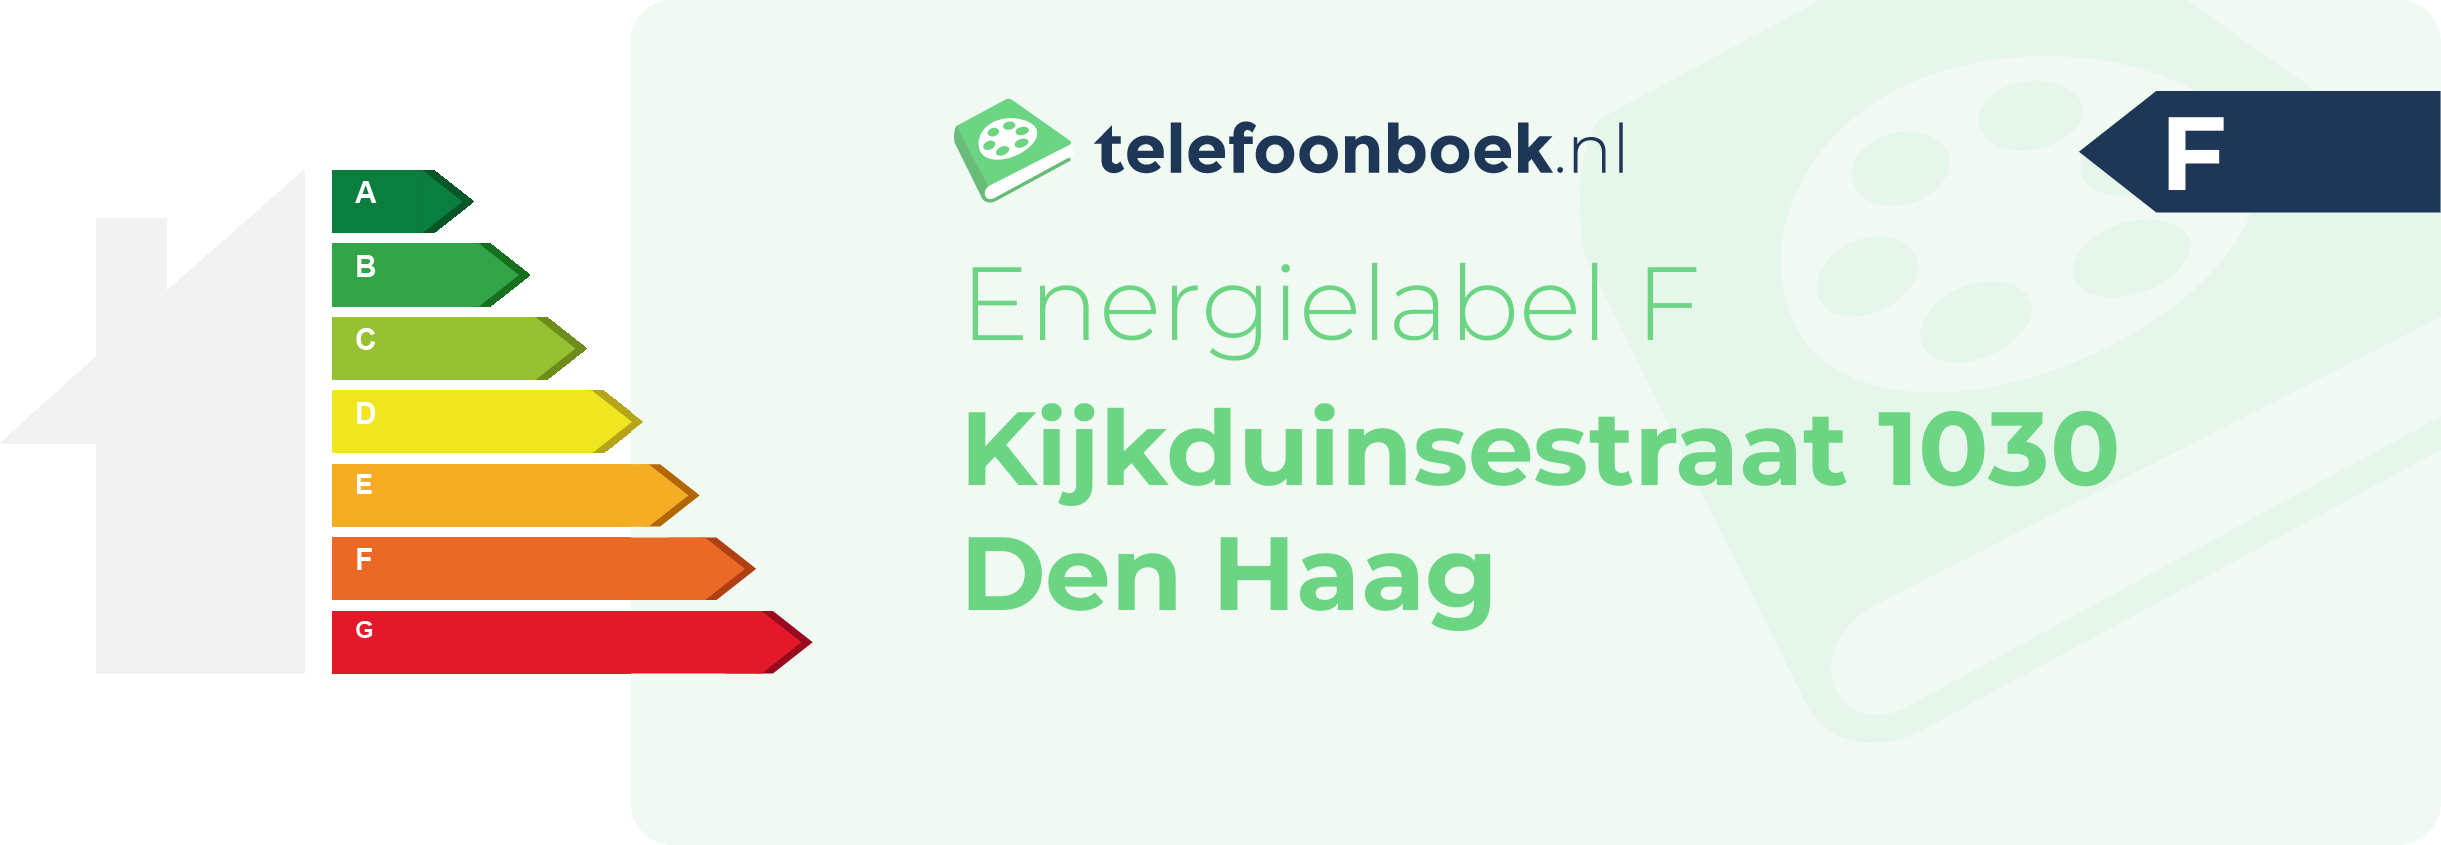 Energielabel Kijkduinsestraat 1030 Den Haag